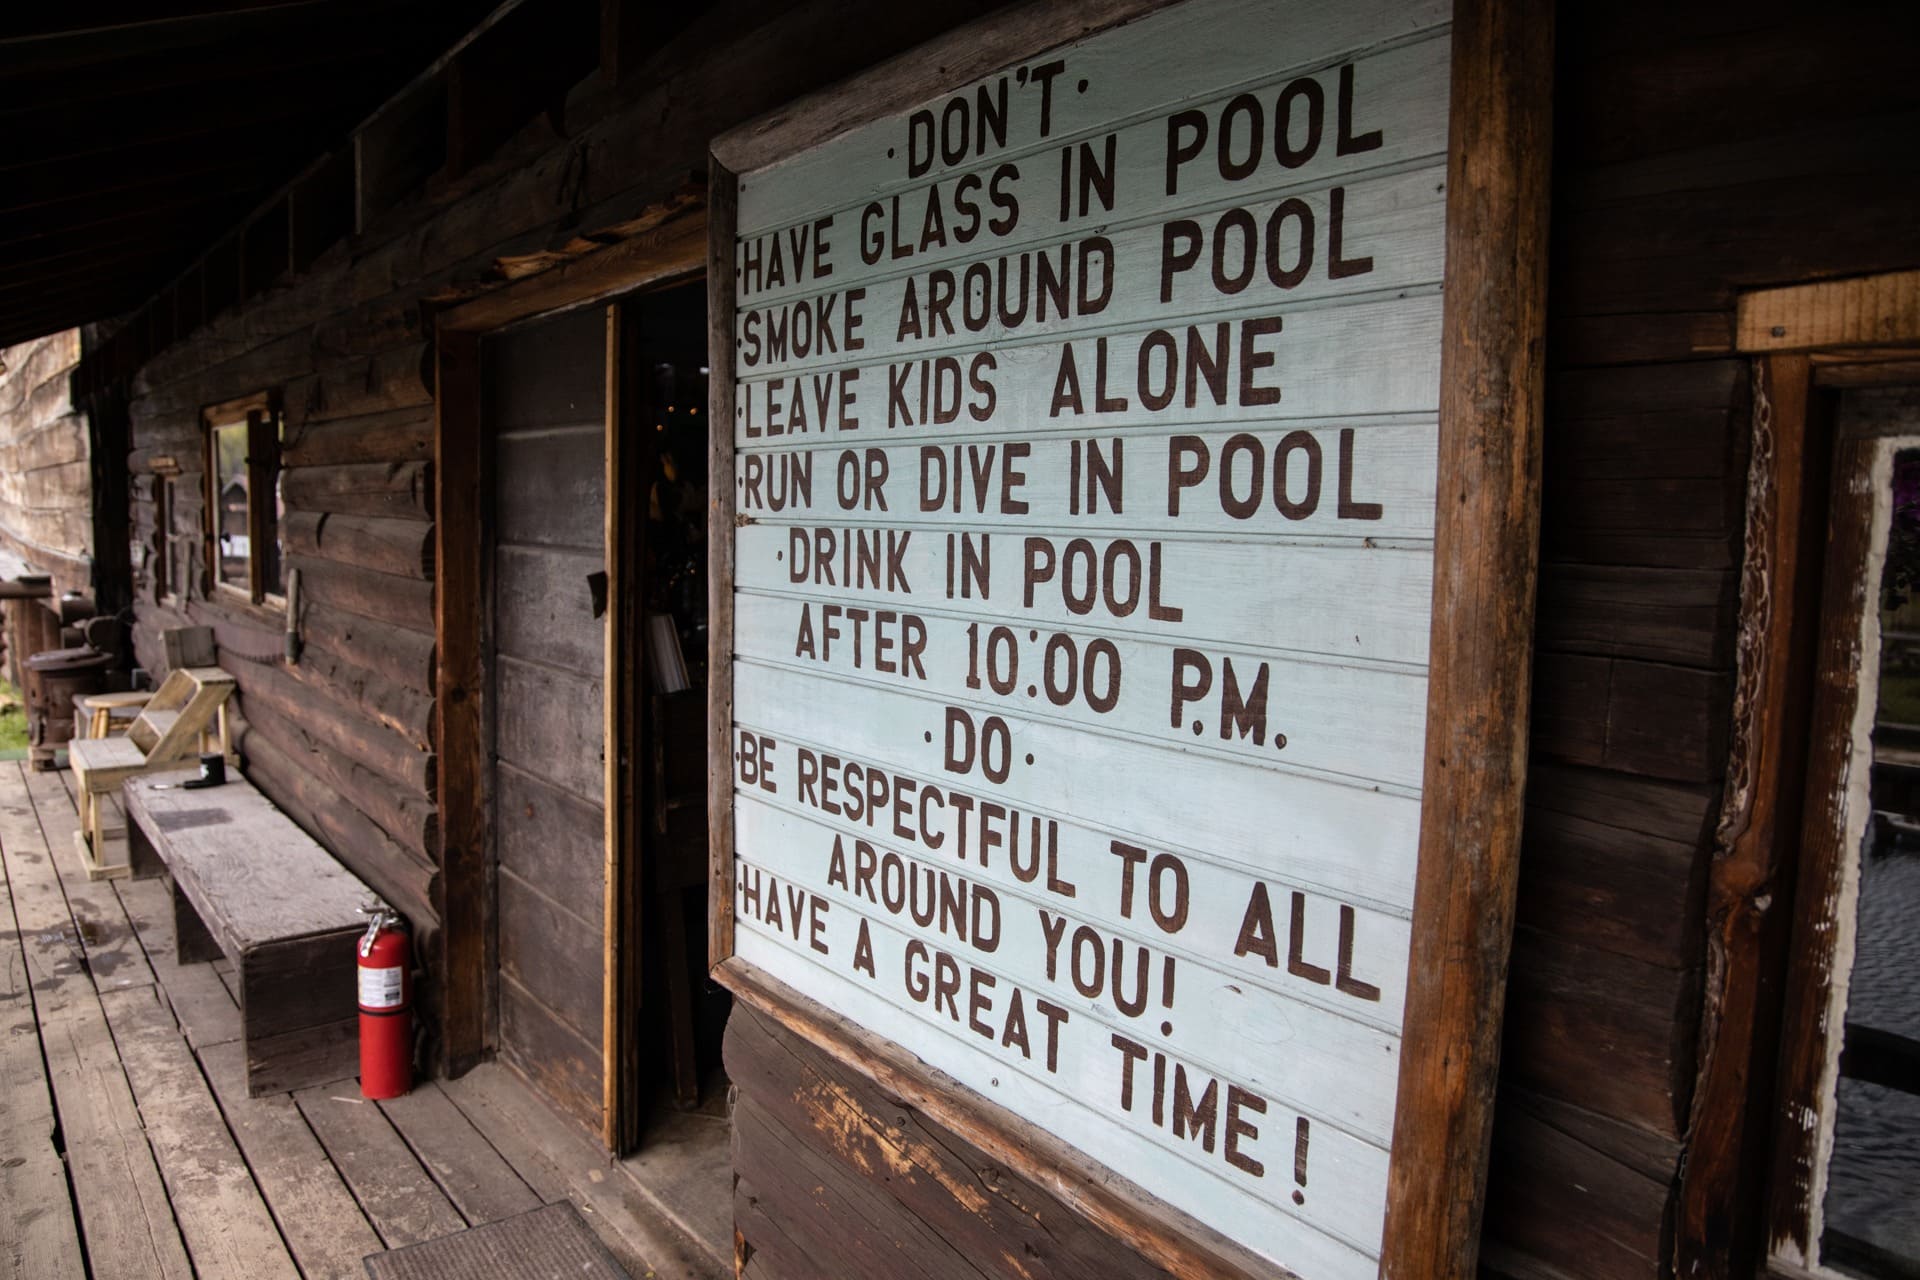 伯格道夫温泉历史悠久的木质建筑上写着“晚上10点后，不要在泳池里放玻璃，在泳池周围抽烟，让孩子们在泳池里跑步或潜水，在泳池里喝饮料。”一定要尊重你周围的人!玩得开心!”